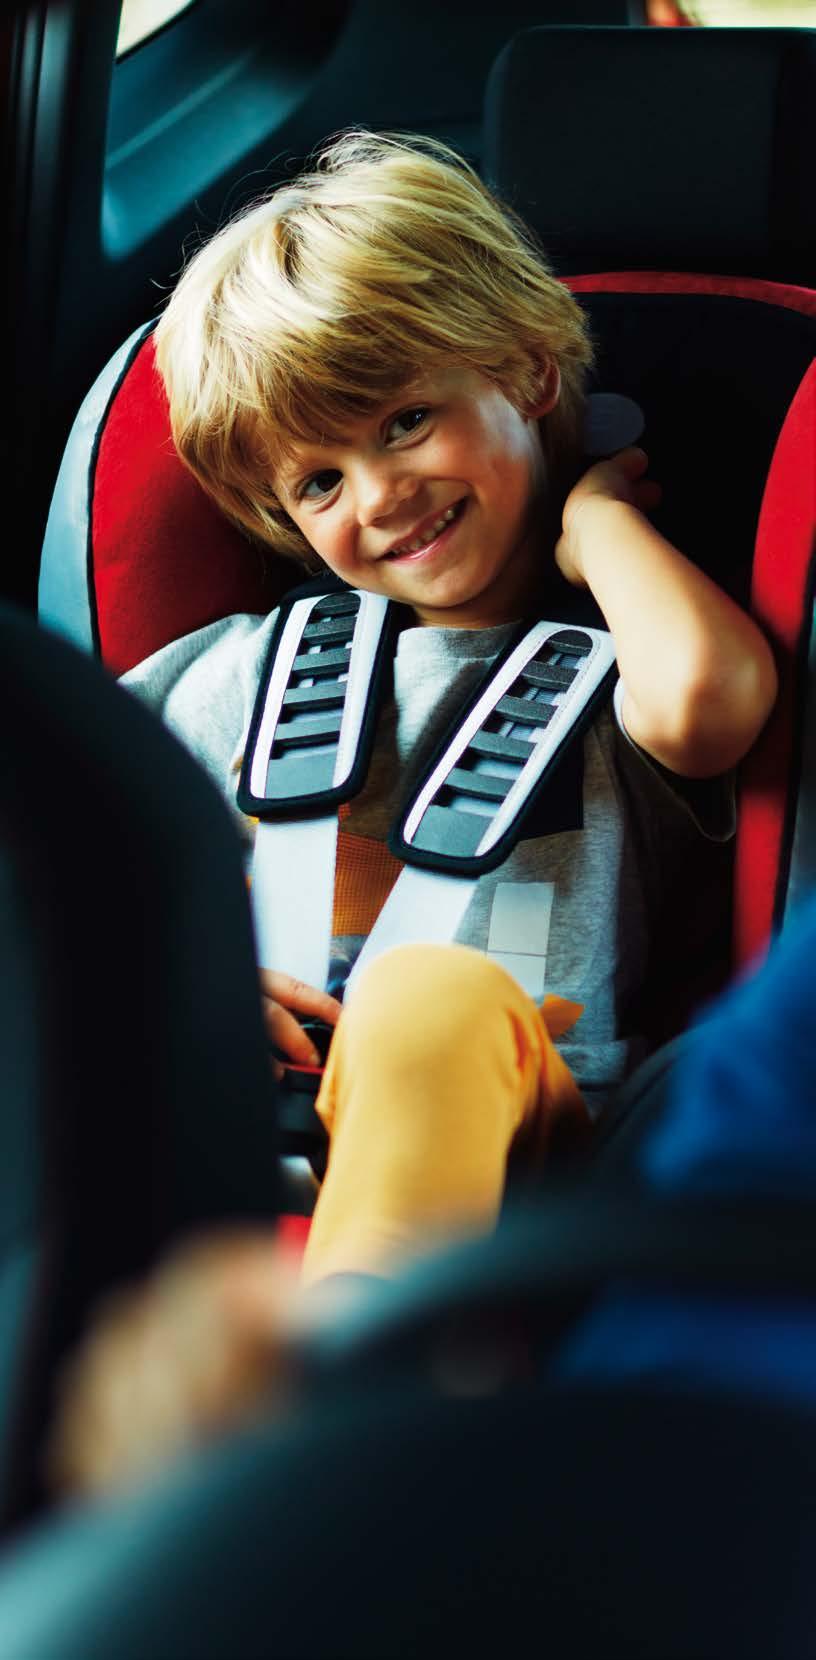 SEAT Försäkring. PRIVAT FÖRETAG SEAT Försäkring är skräddarsydd för din SEAT. Förutom generösa ersättningsnivåer får du alltid trygga reparationer med originaldelar hos auktoriserade SEAT-verkstäder.